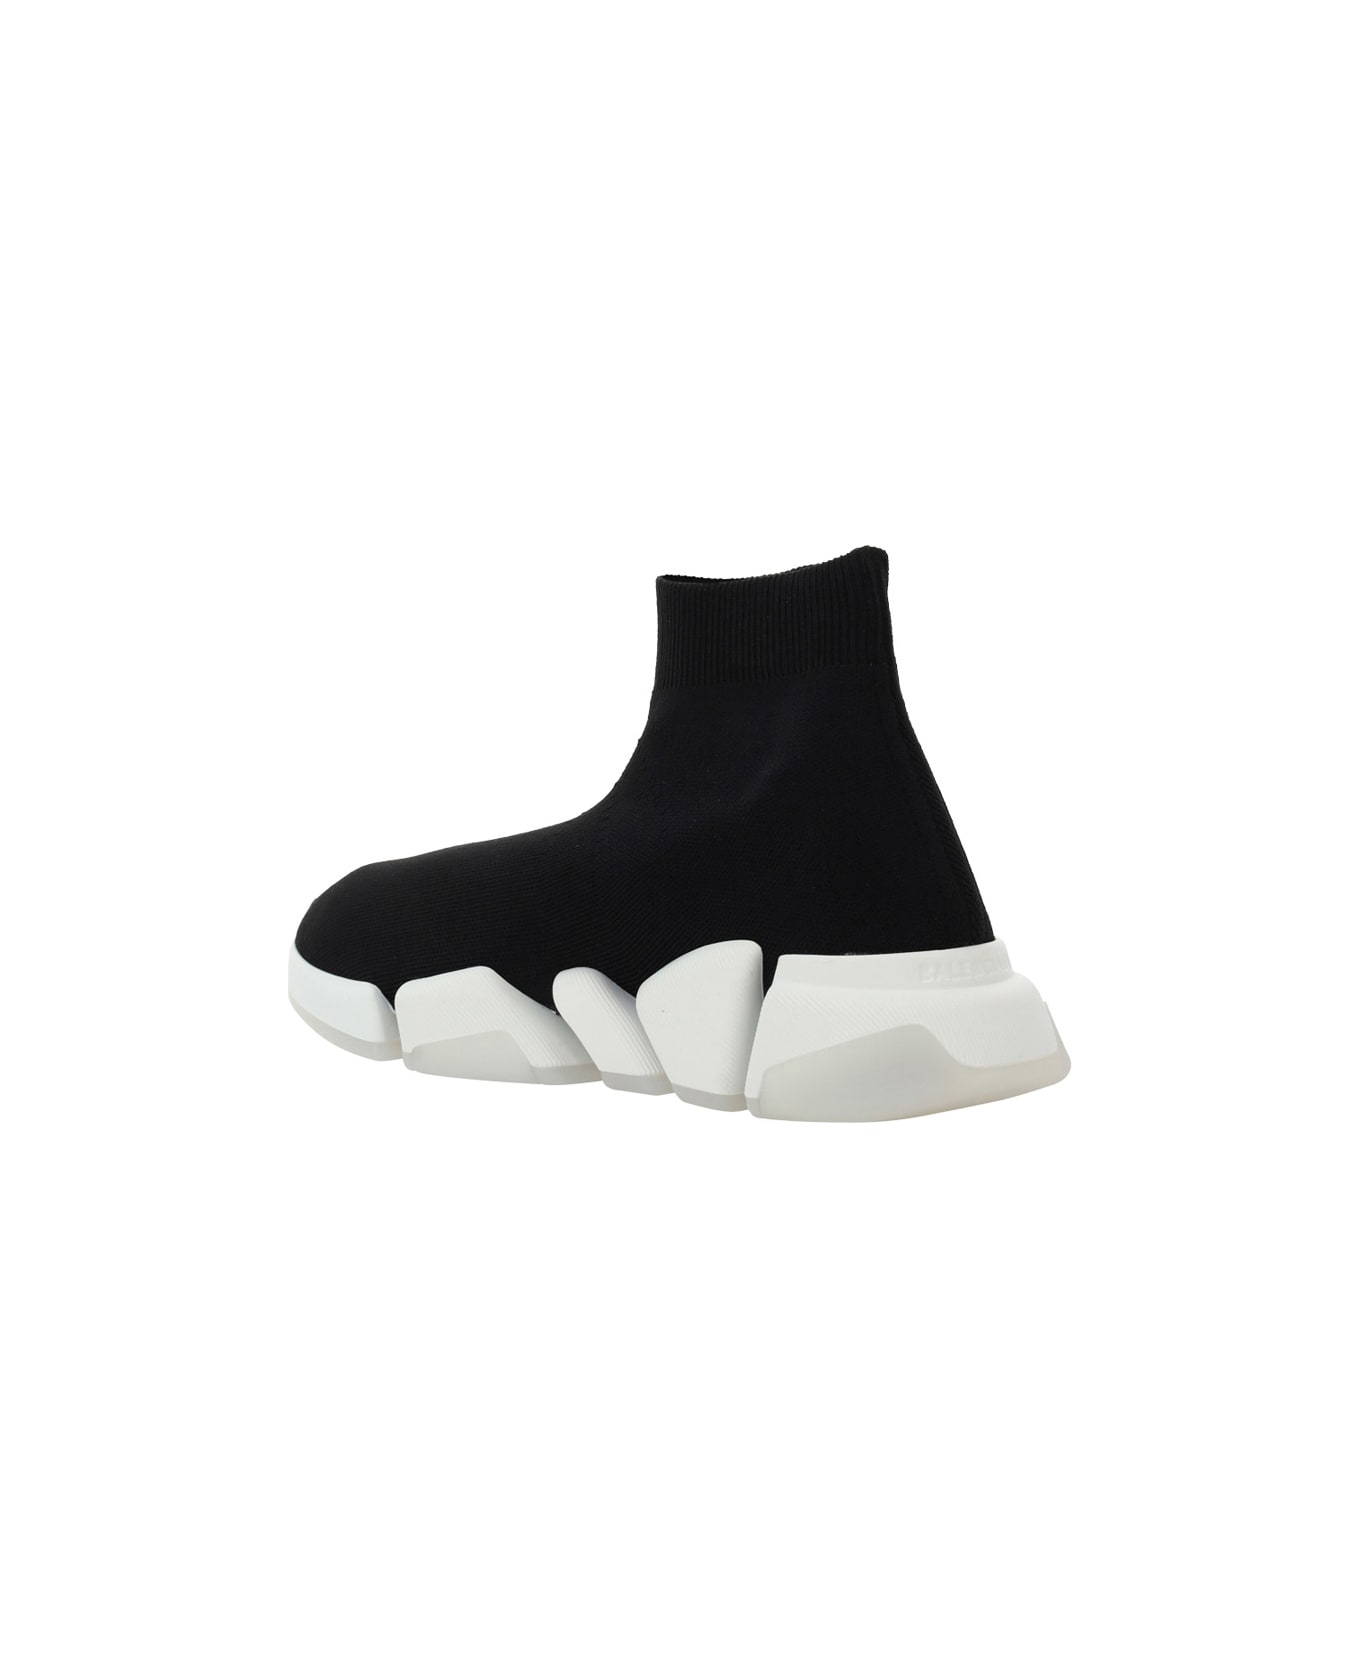 Balenciaga Speed Sneakers - Black/white/trasparent